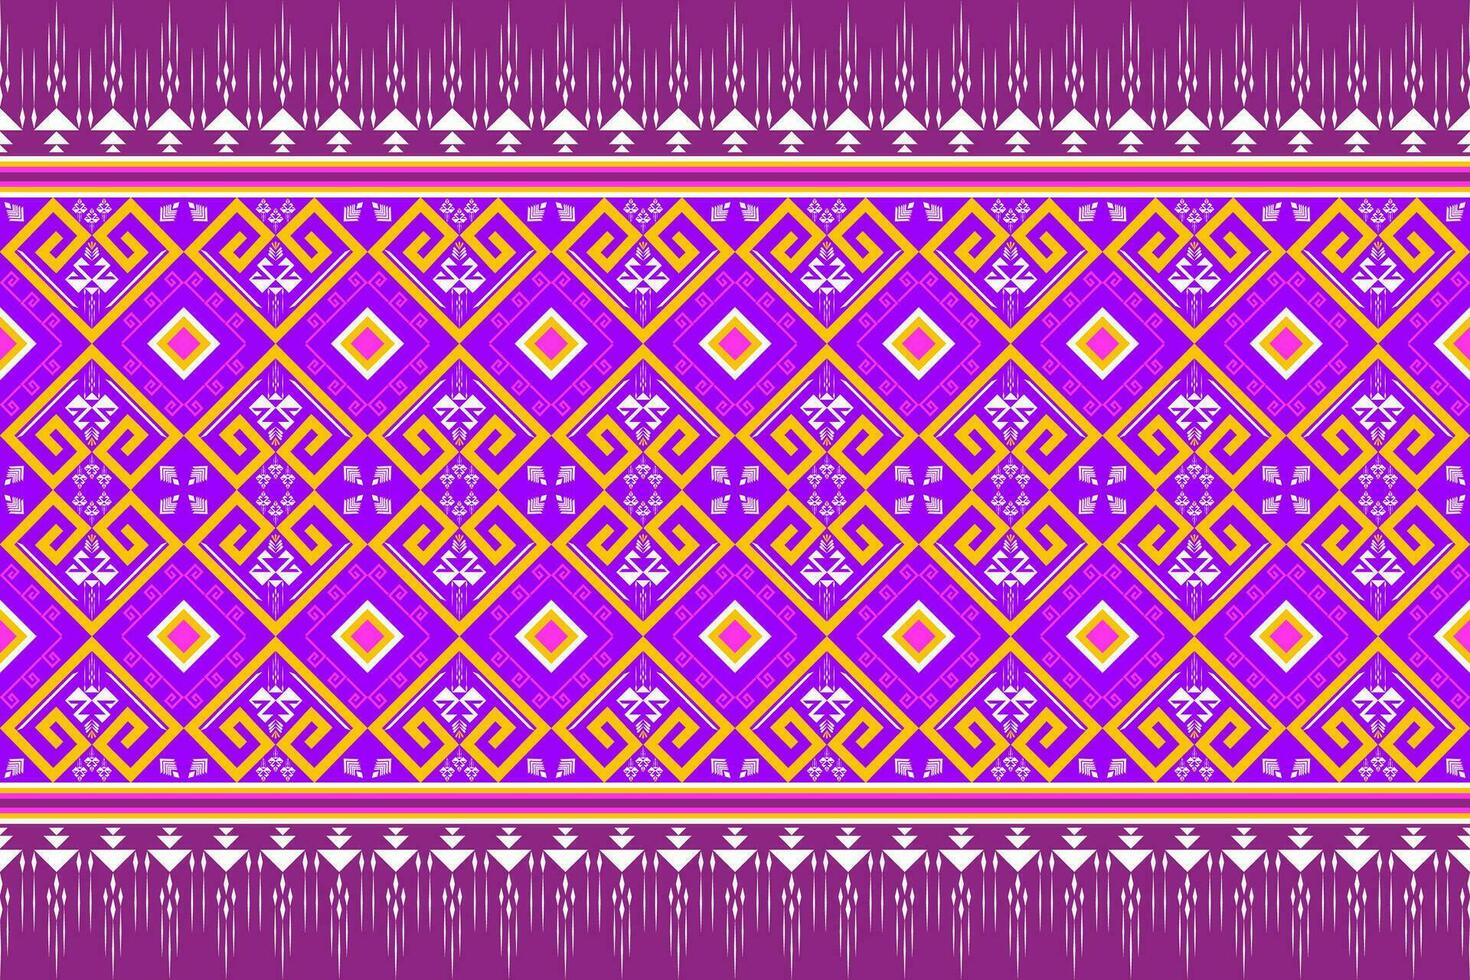 meetkundig etnisch patroon traditioneel ontwerp voor achtergrond, tapijt, behang, kleding, inpakken, batik, kleding stof, vector illustratie borduurwerk stijl.